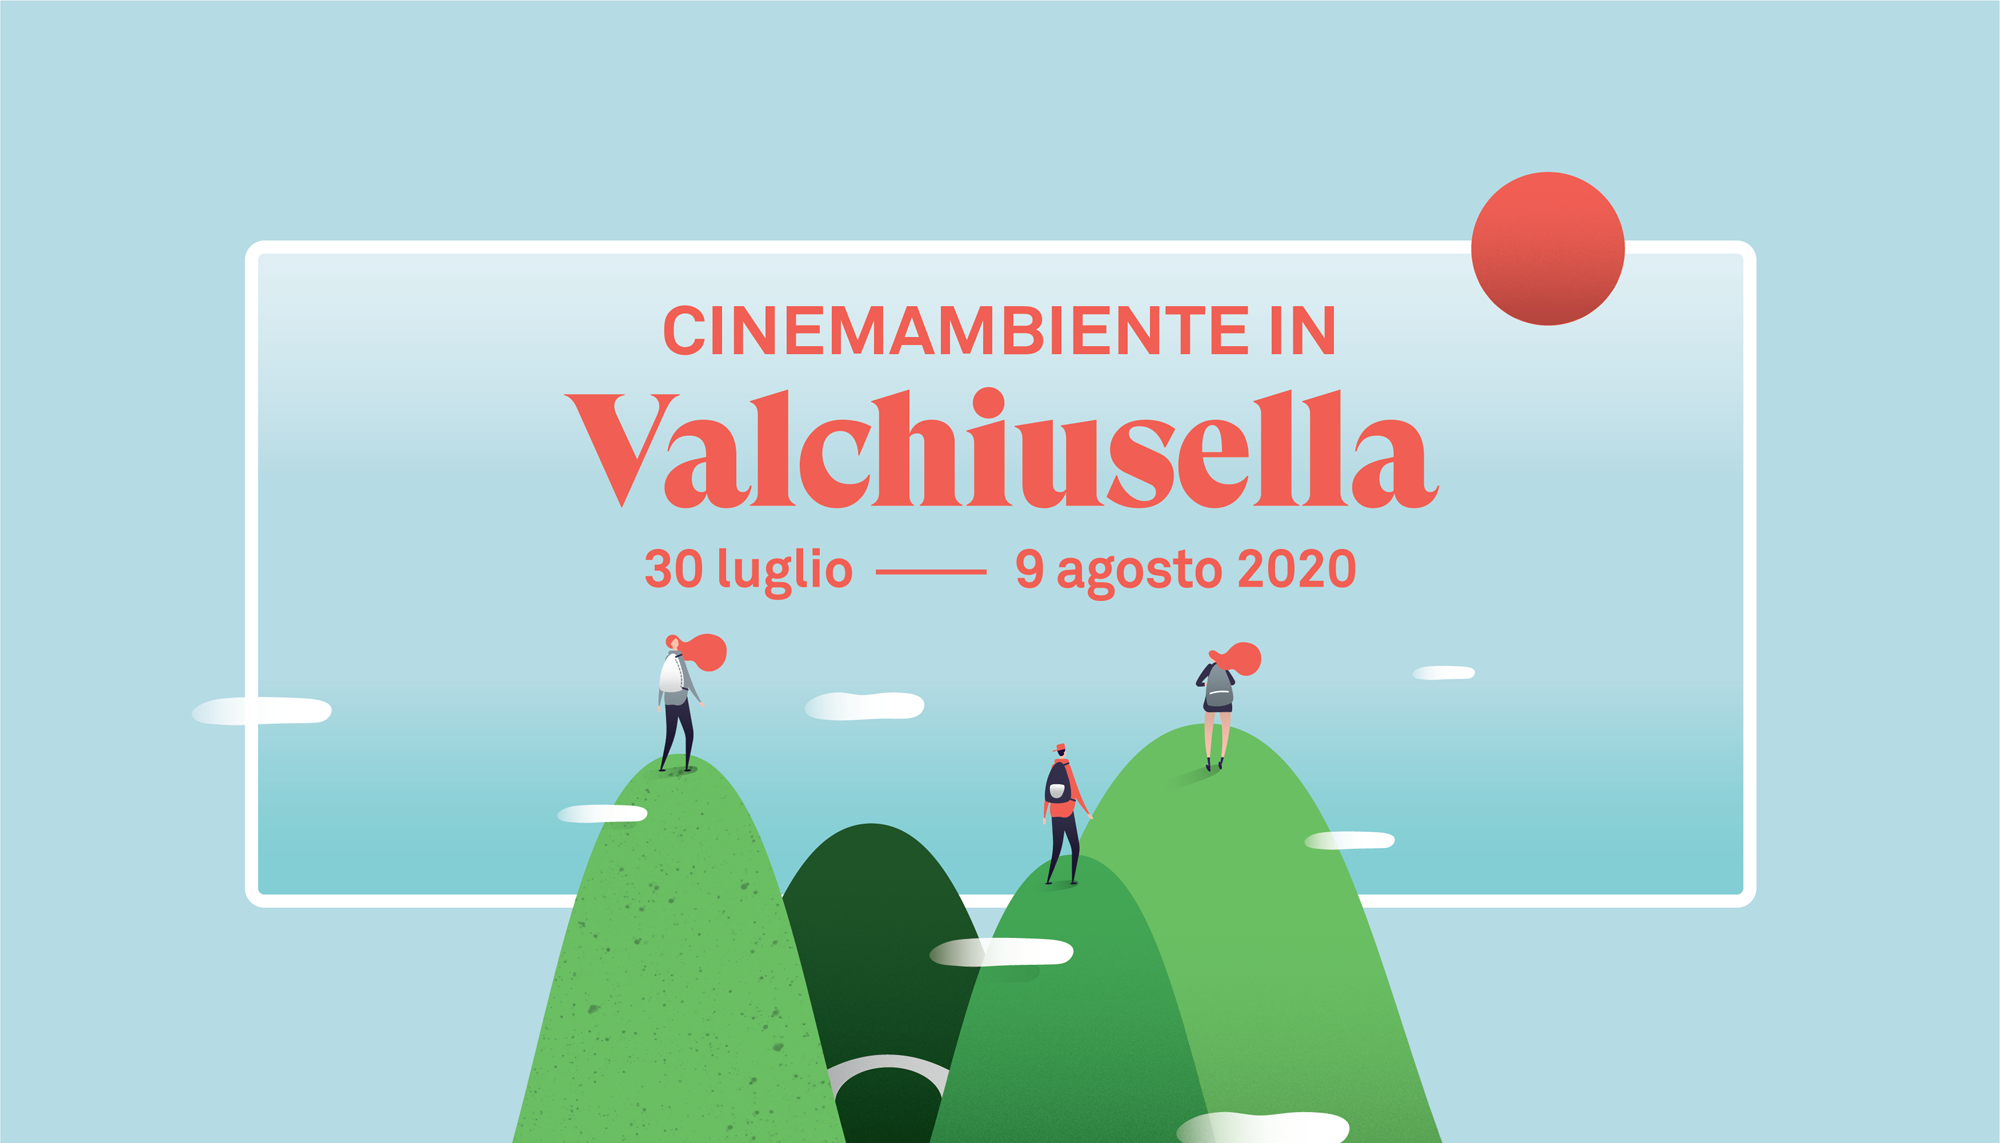 CinemAmbiente in Valchiusella | 30 luglio, 9 agosto 2020